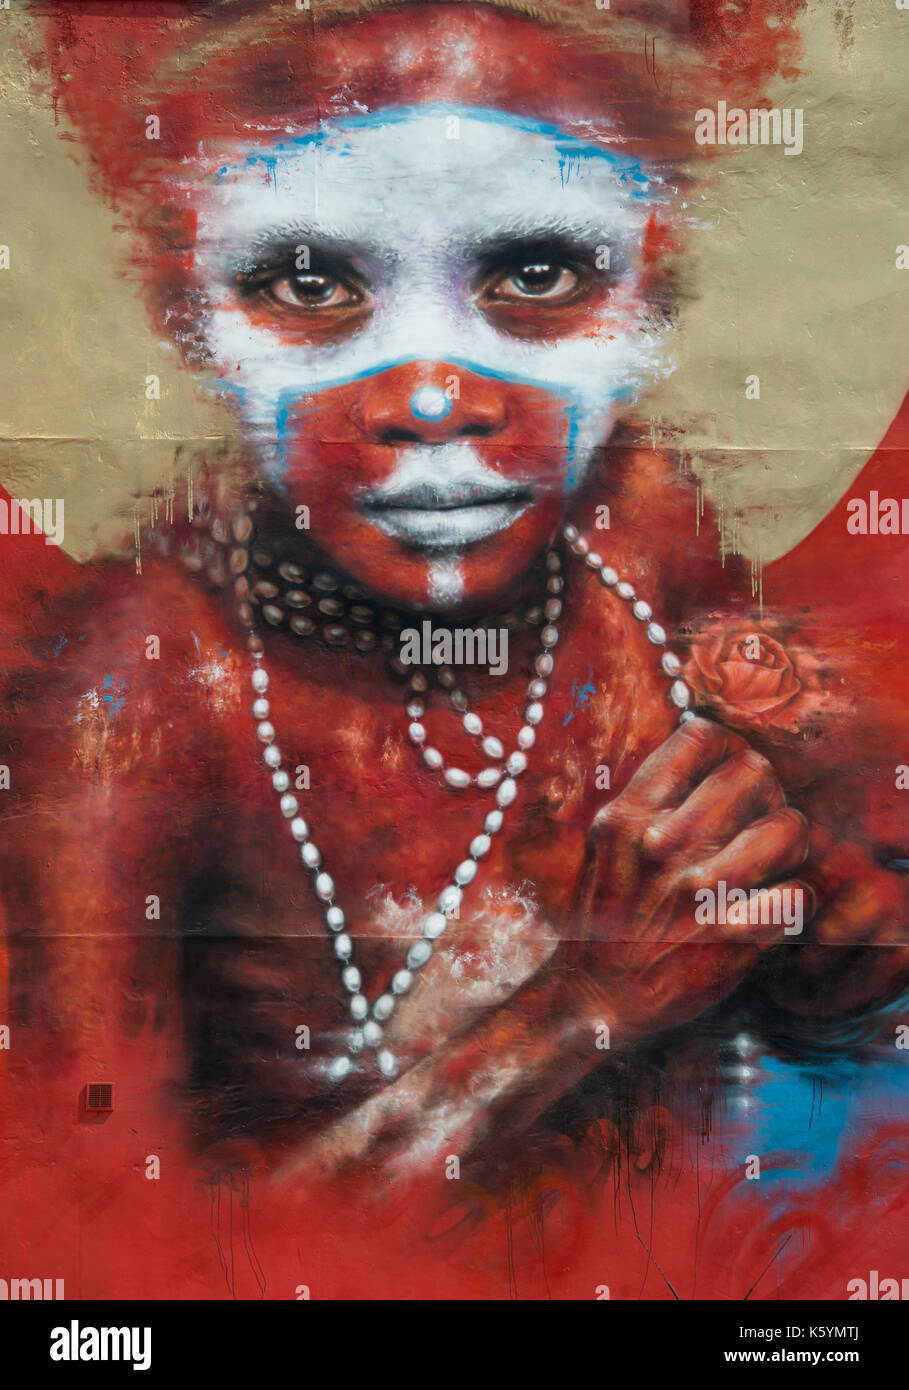 Große Straße kunst betitelt Papua Neuguinea vom Künstler Dale Grimshaw zwischen Speer und Oldham Street im Northern Quarter, Manchester, Großbritannien. Stockfoto